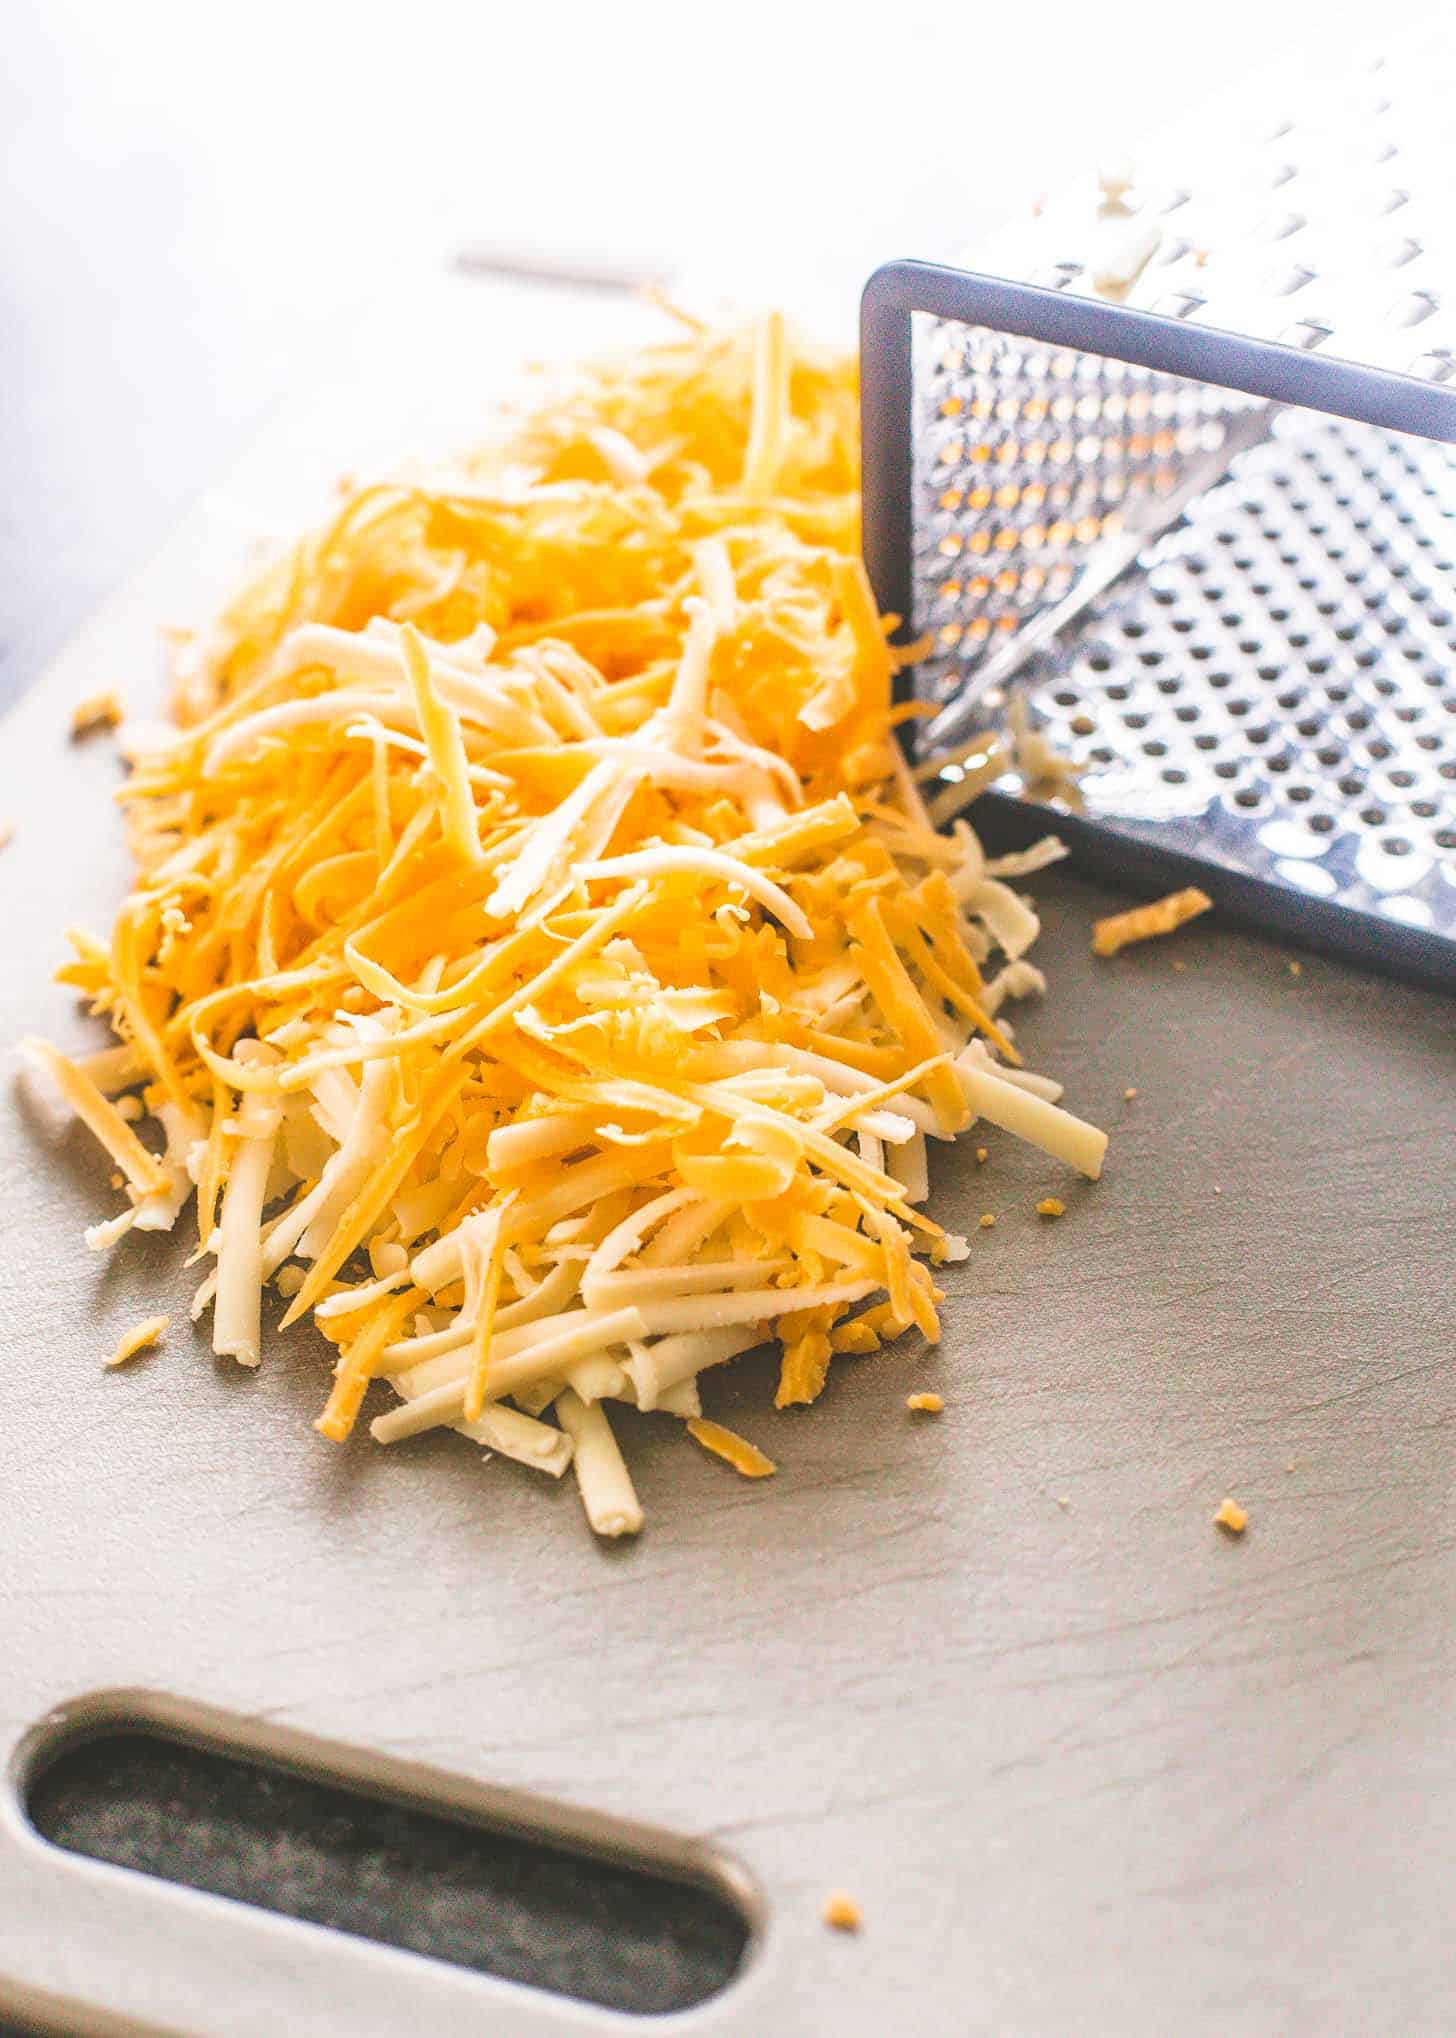 shredded cheese on a grey cutting board